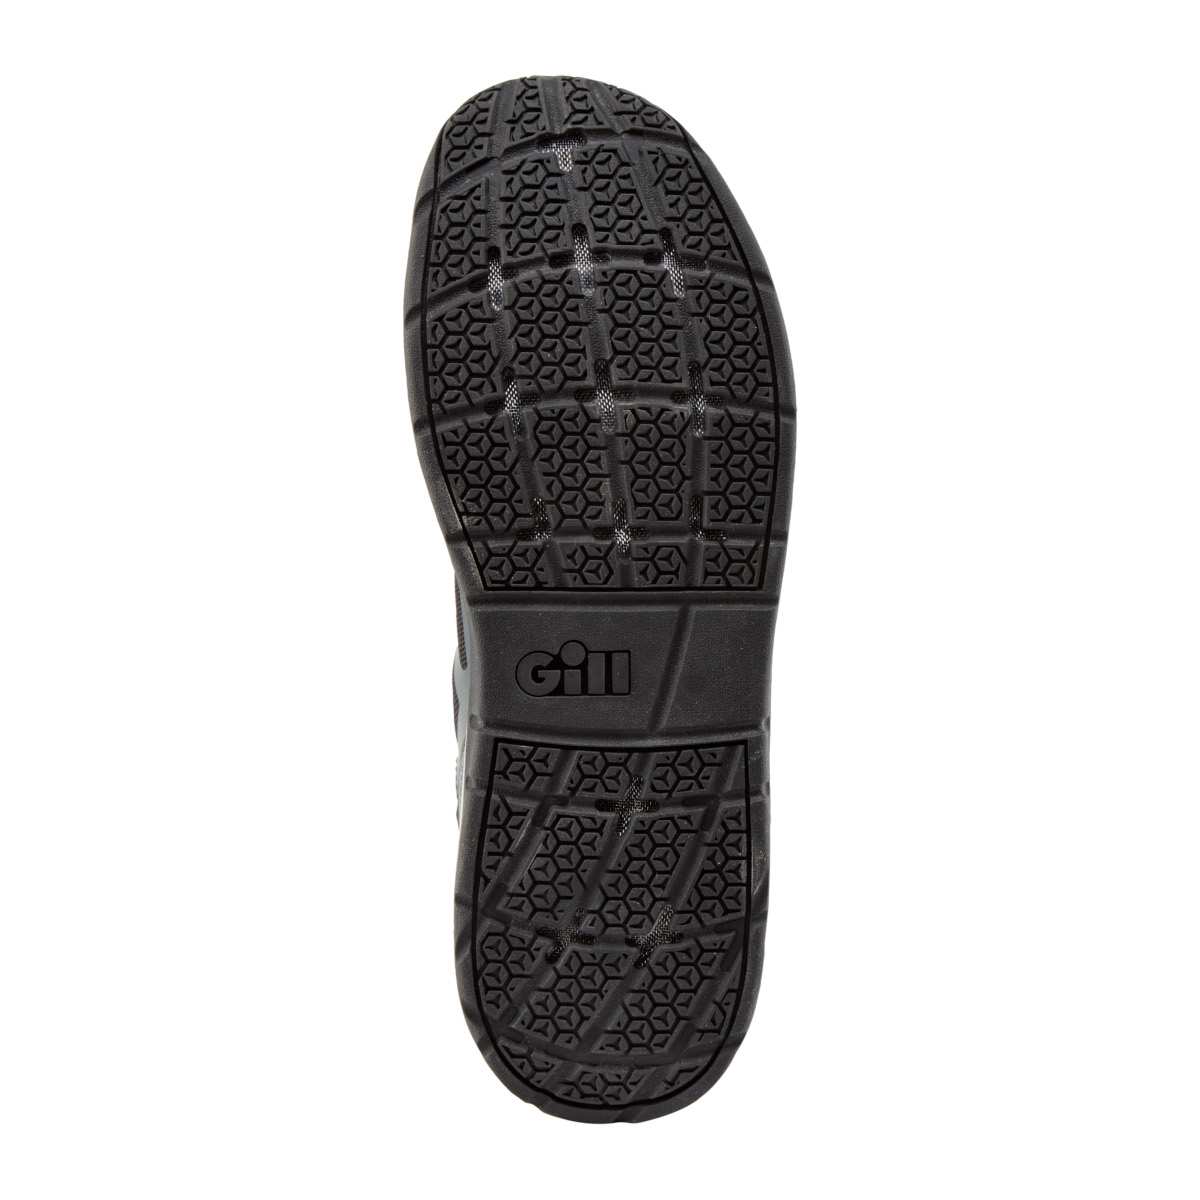 Gill Race chaussure de voile, unisexe - graphite, pointure 42